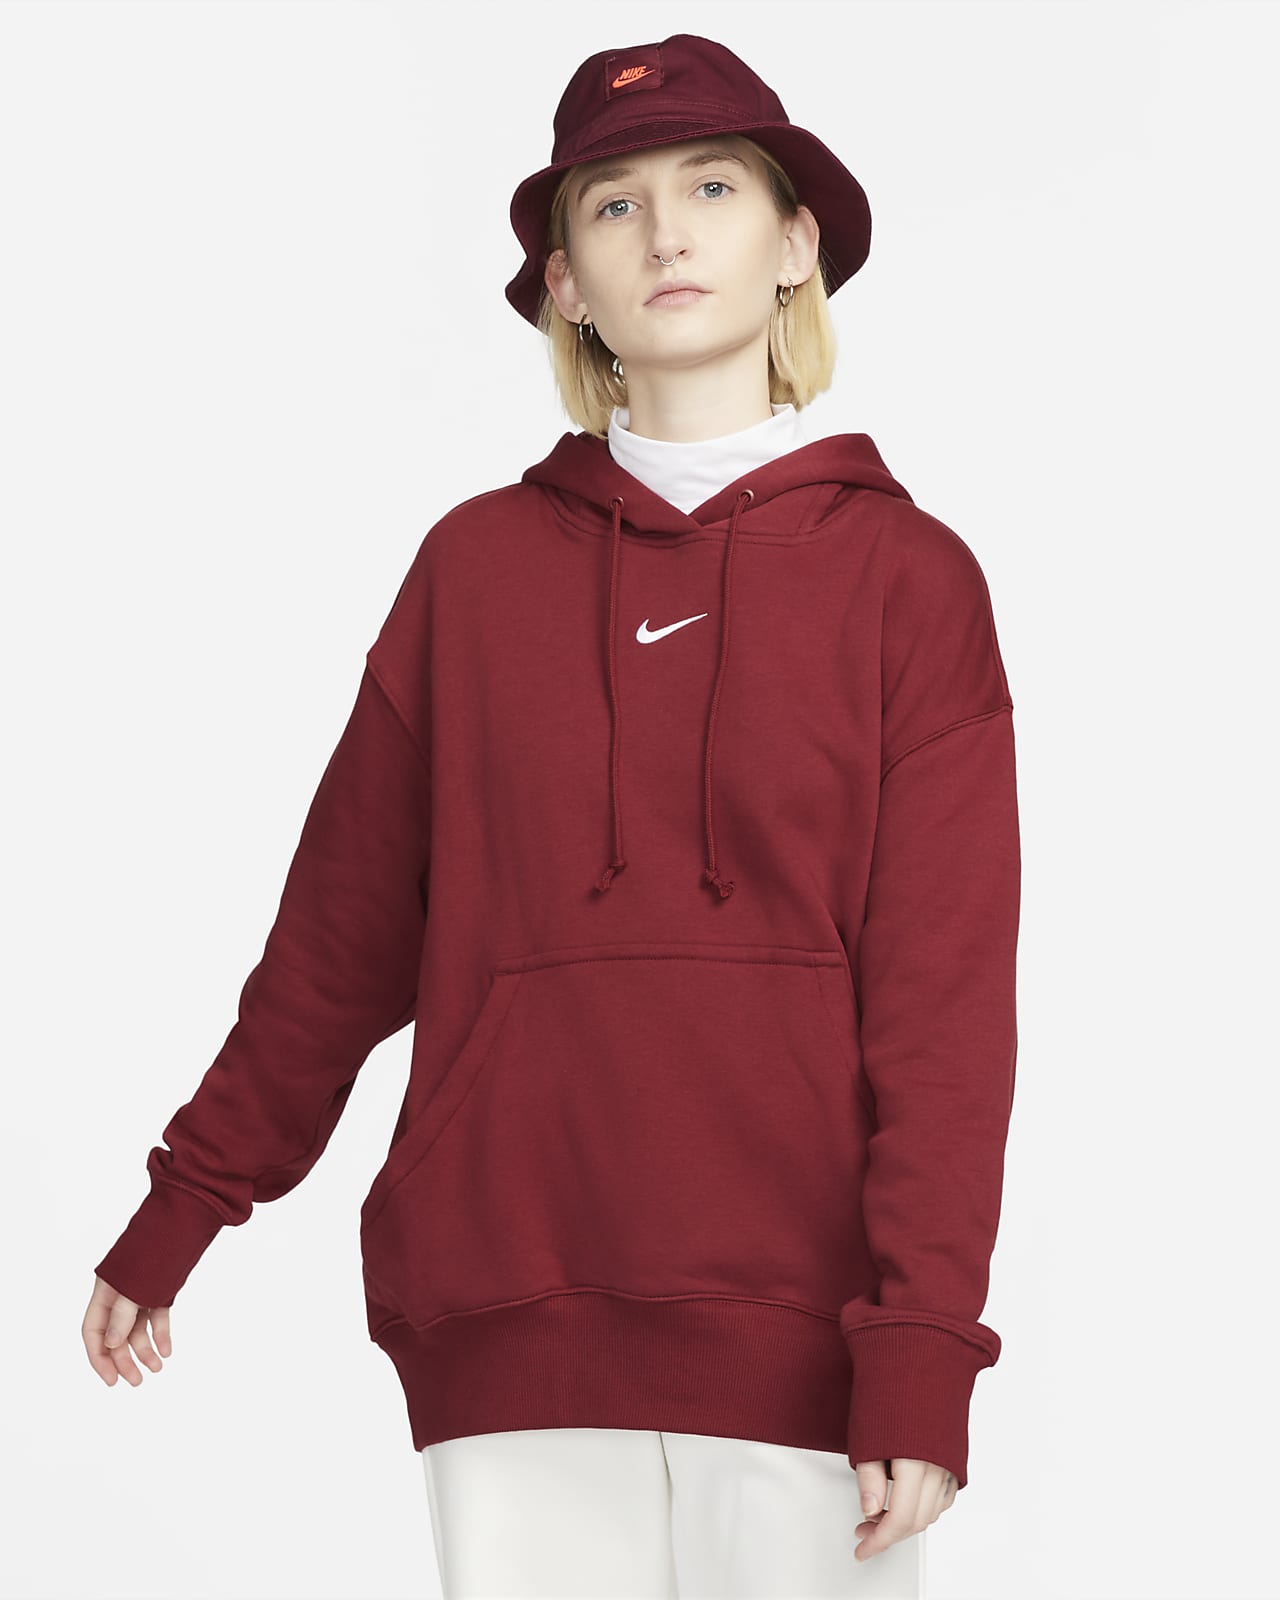 Nike Sportswear Phoenix Fleece Women's Oversized Sweatshirt. UK